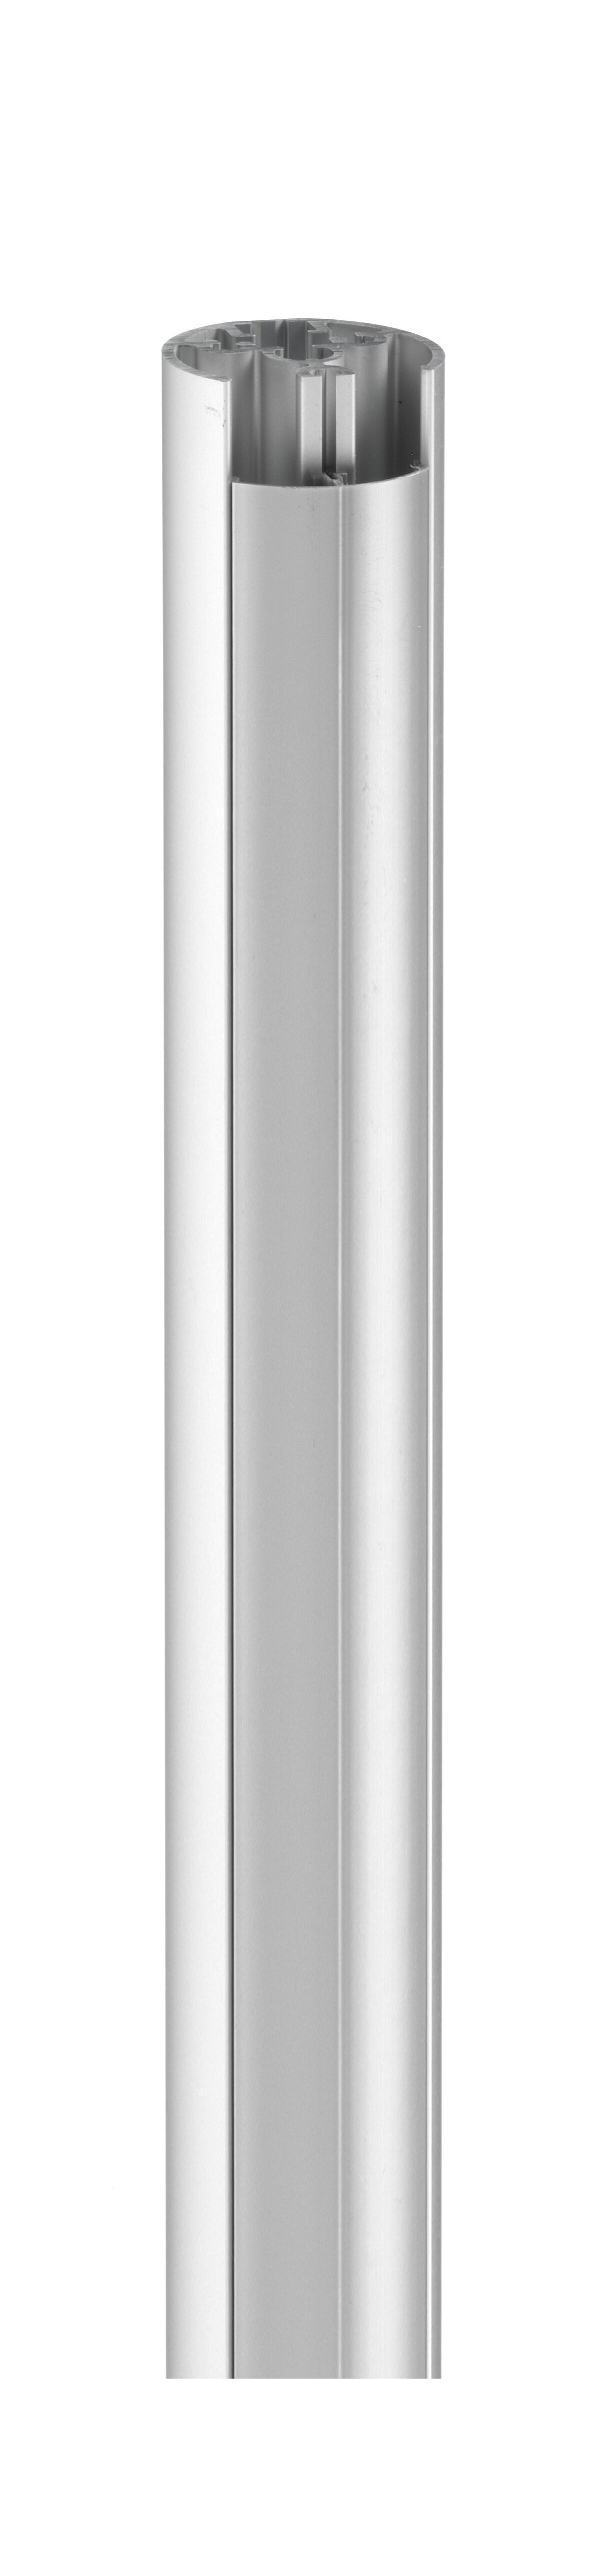 Vogel's PUC 2108 Pole 80 cm - Product